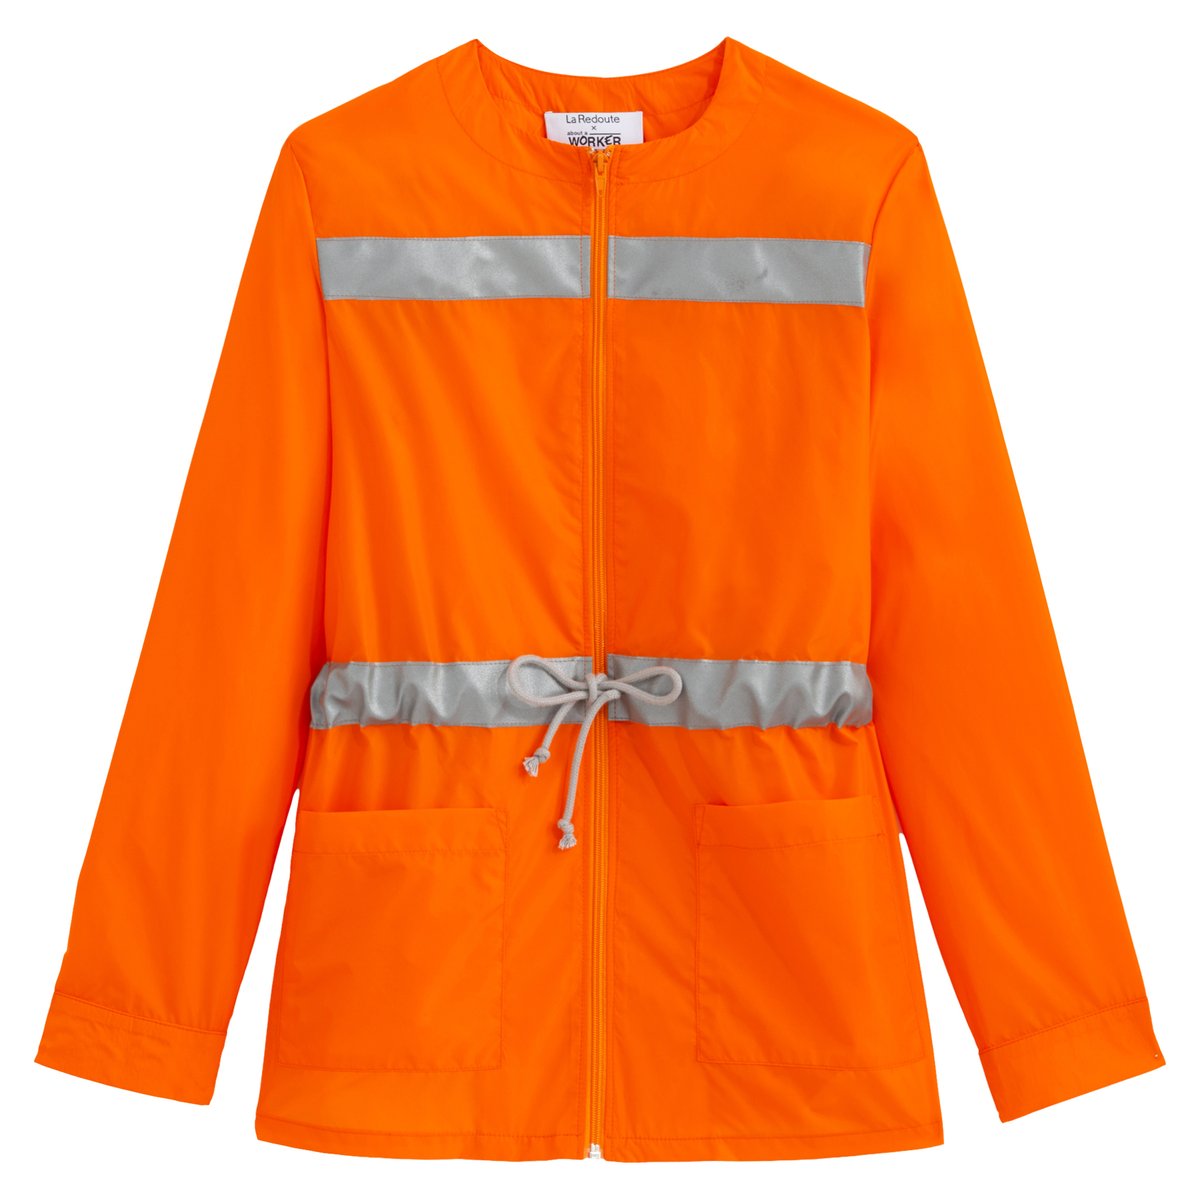 Куртка La Redoute S оранжевый цена и фото